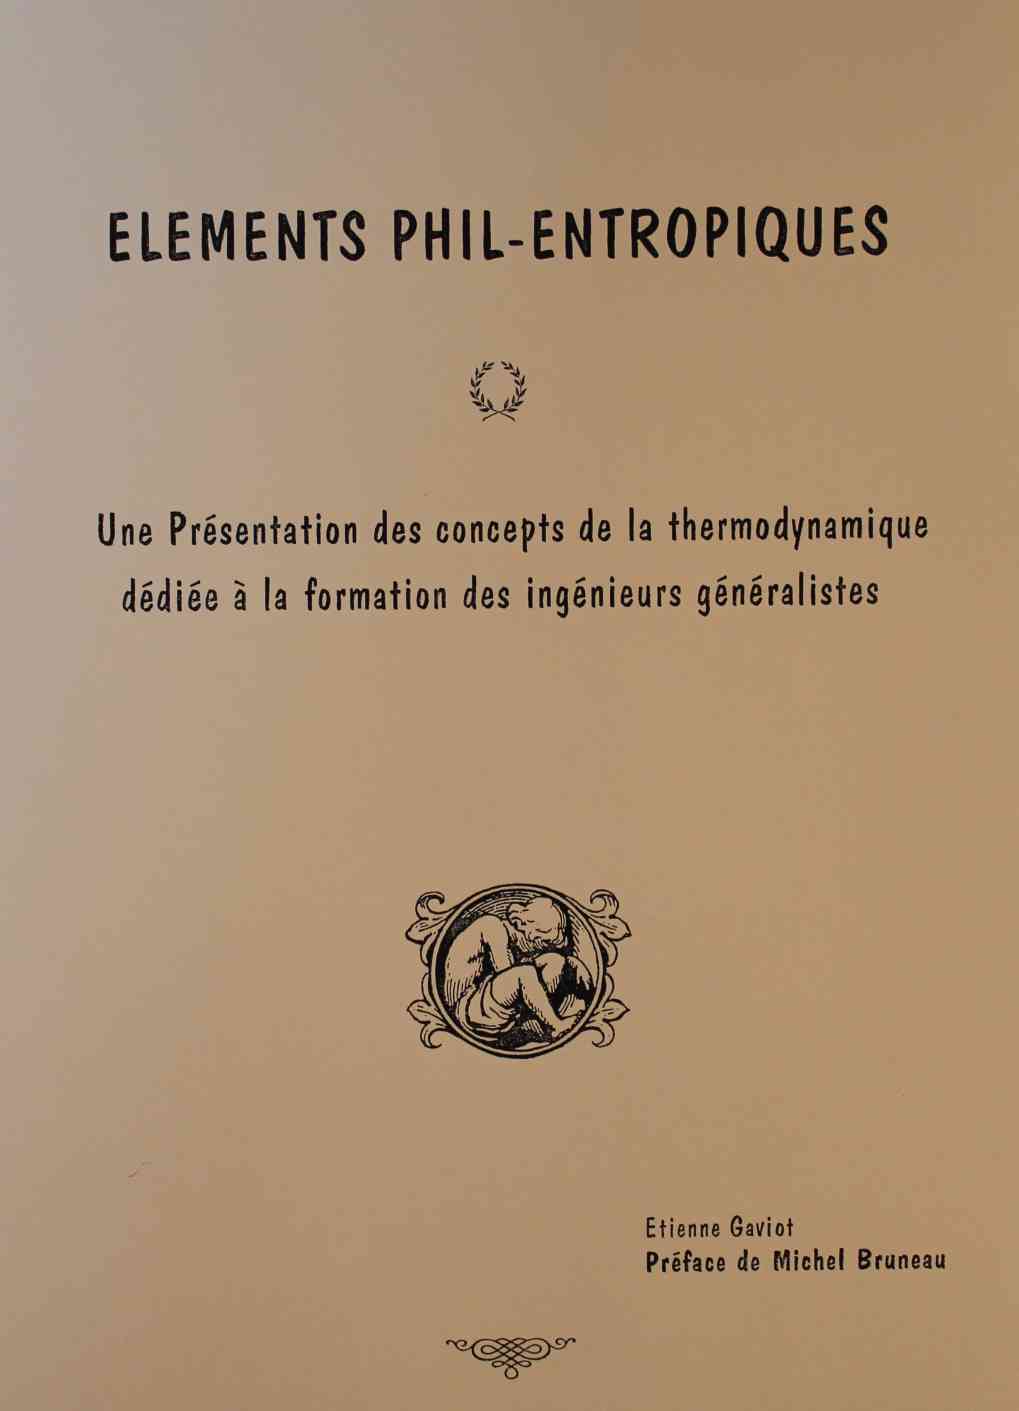 Etienne Gaviot, Elments Phil-Entropiques